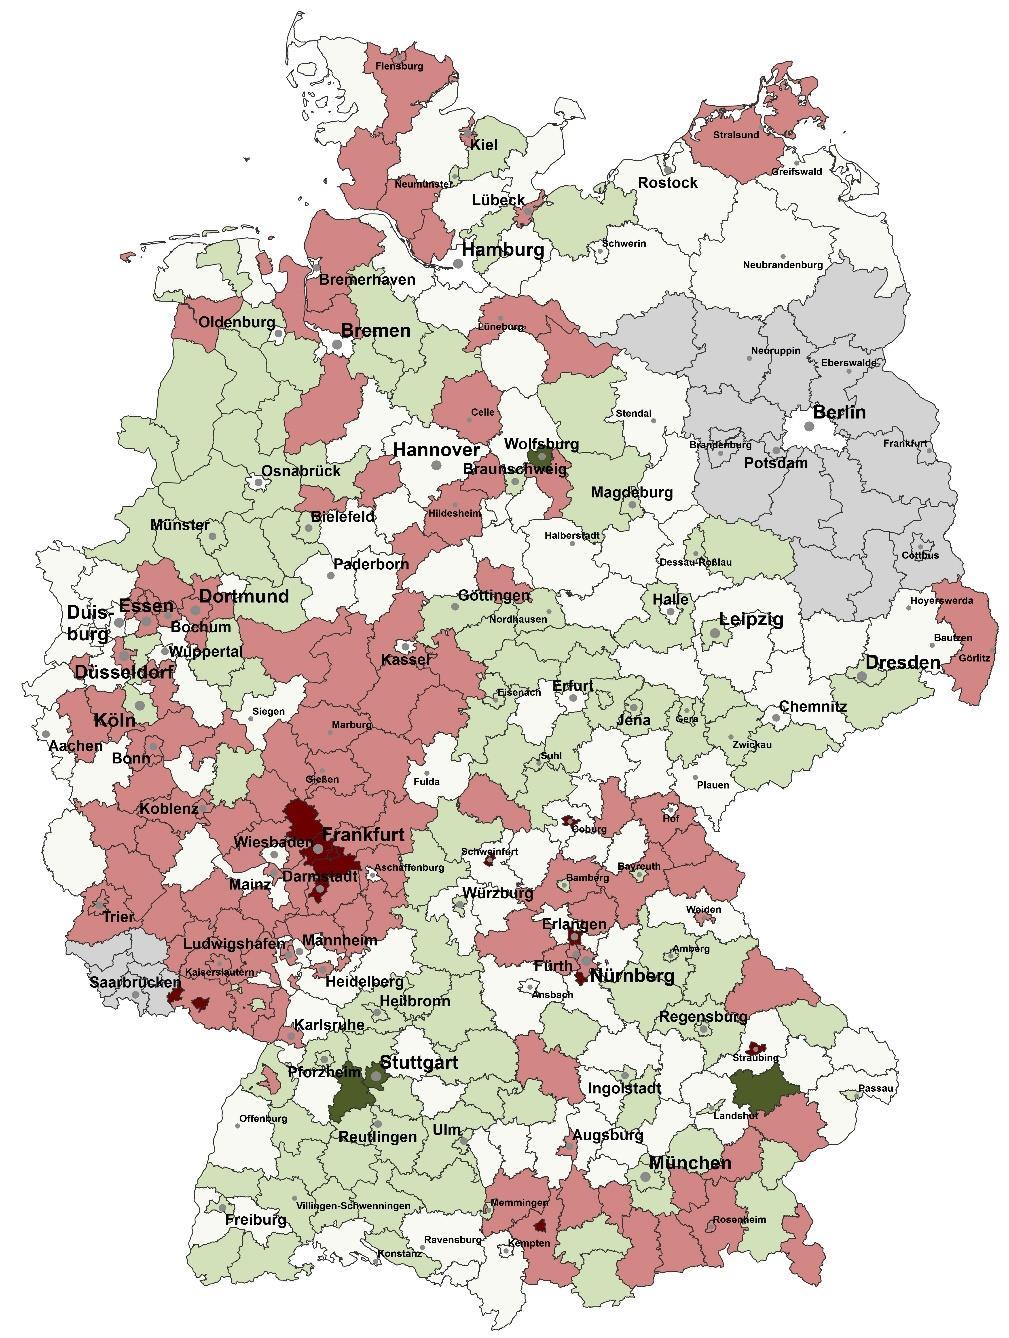 Finanzierungssaldo 2011 Bundesweit in Mrd.